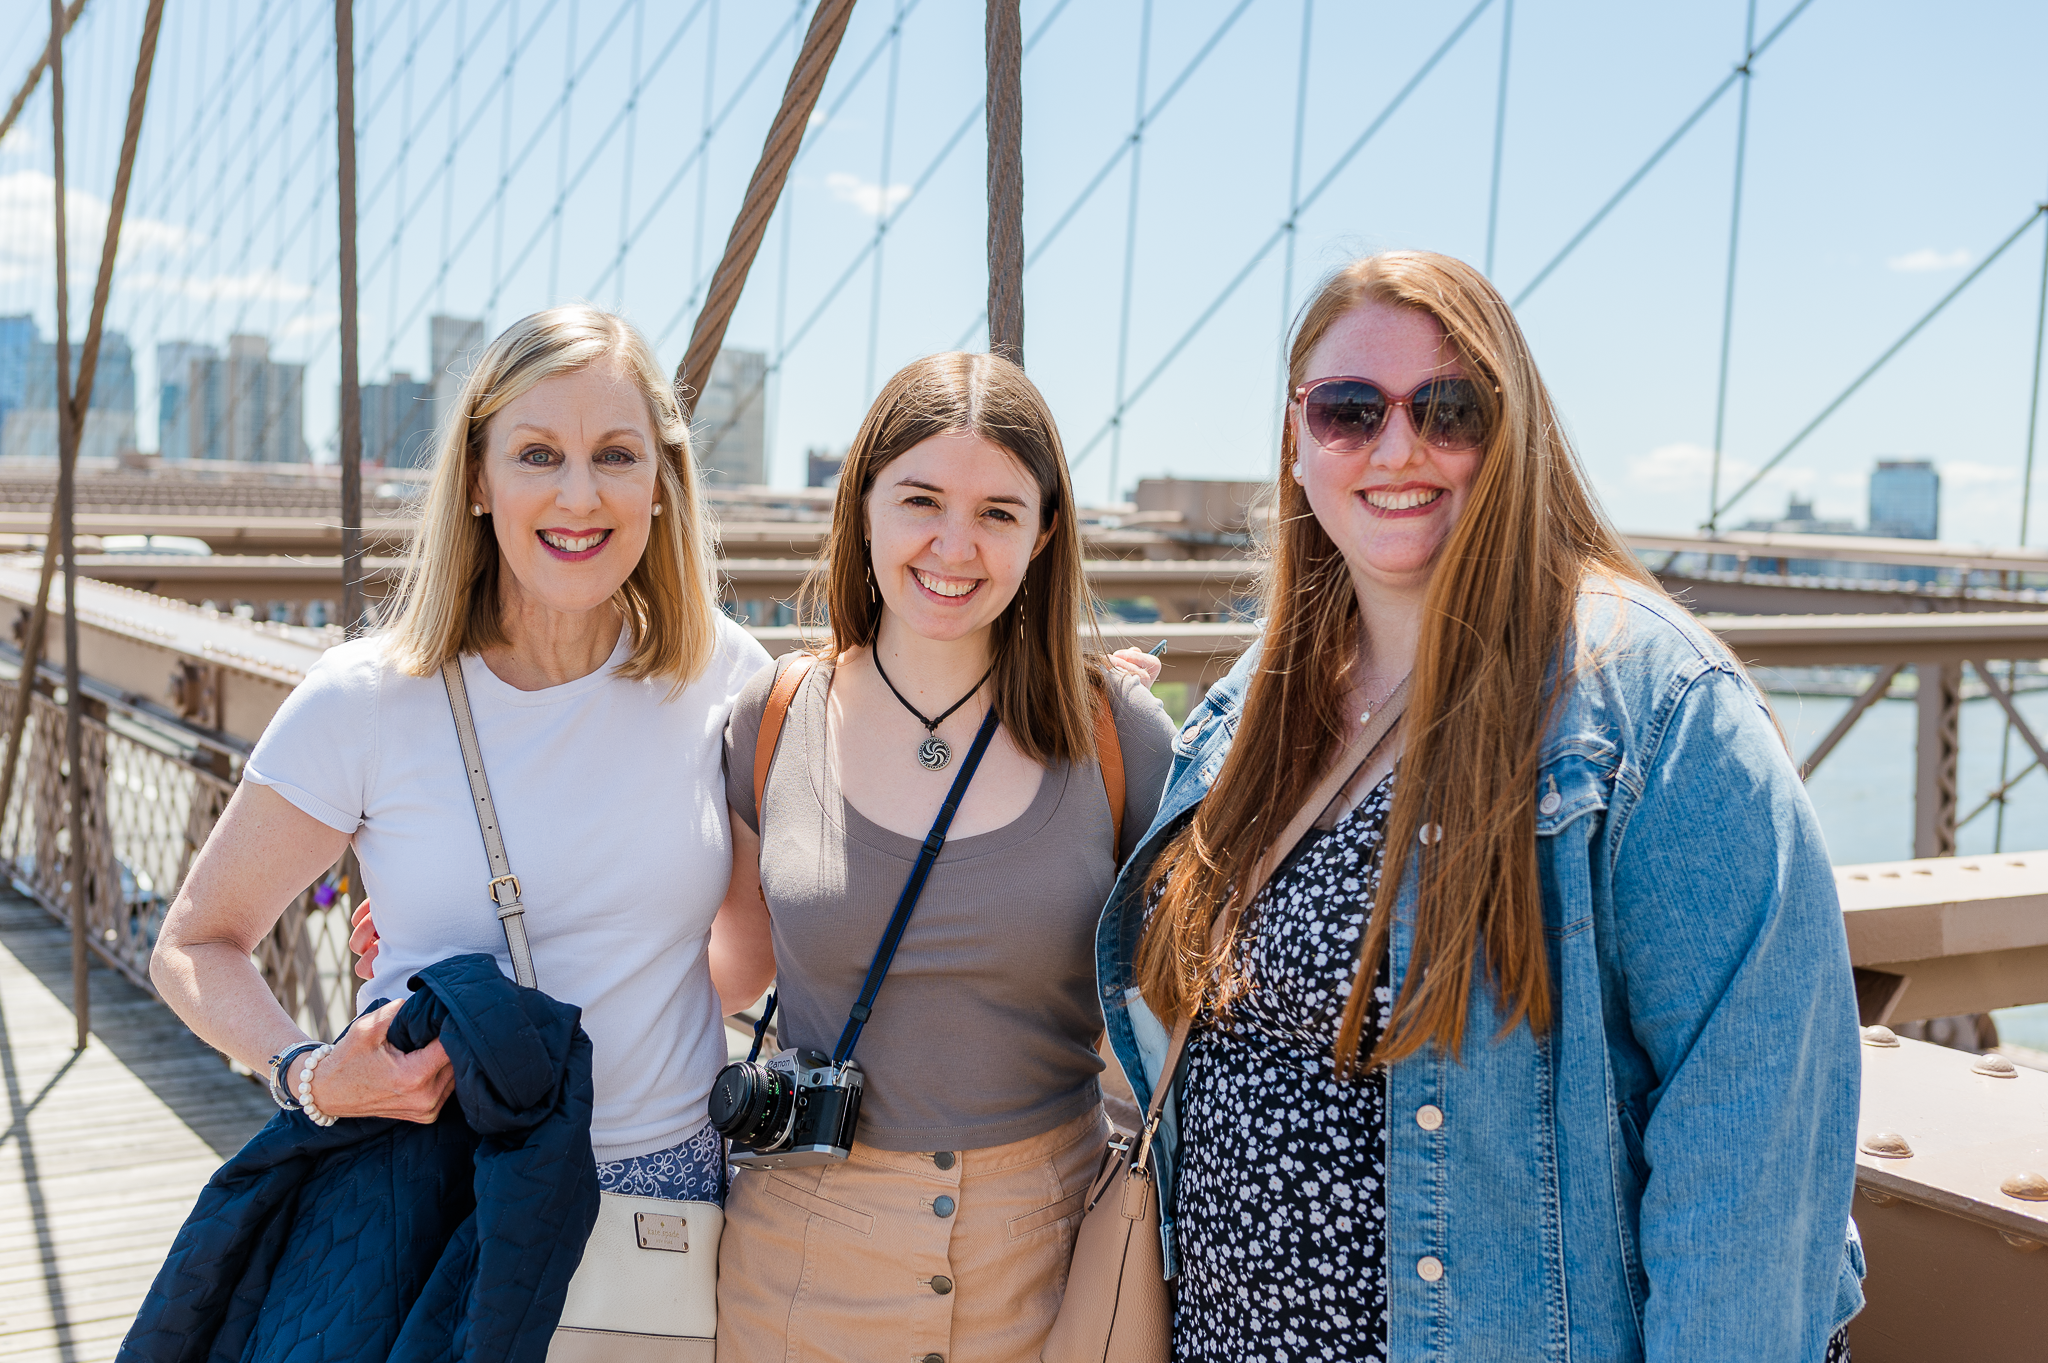 Michele, Alison, and Brynn on Brooklyn Bridge